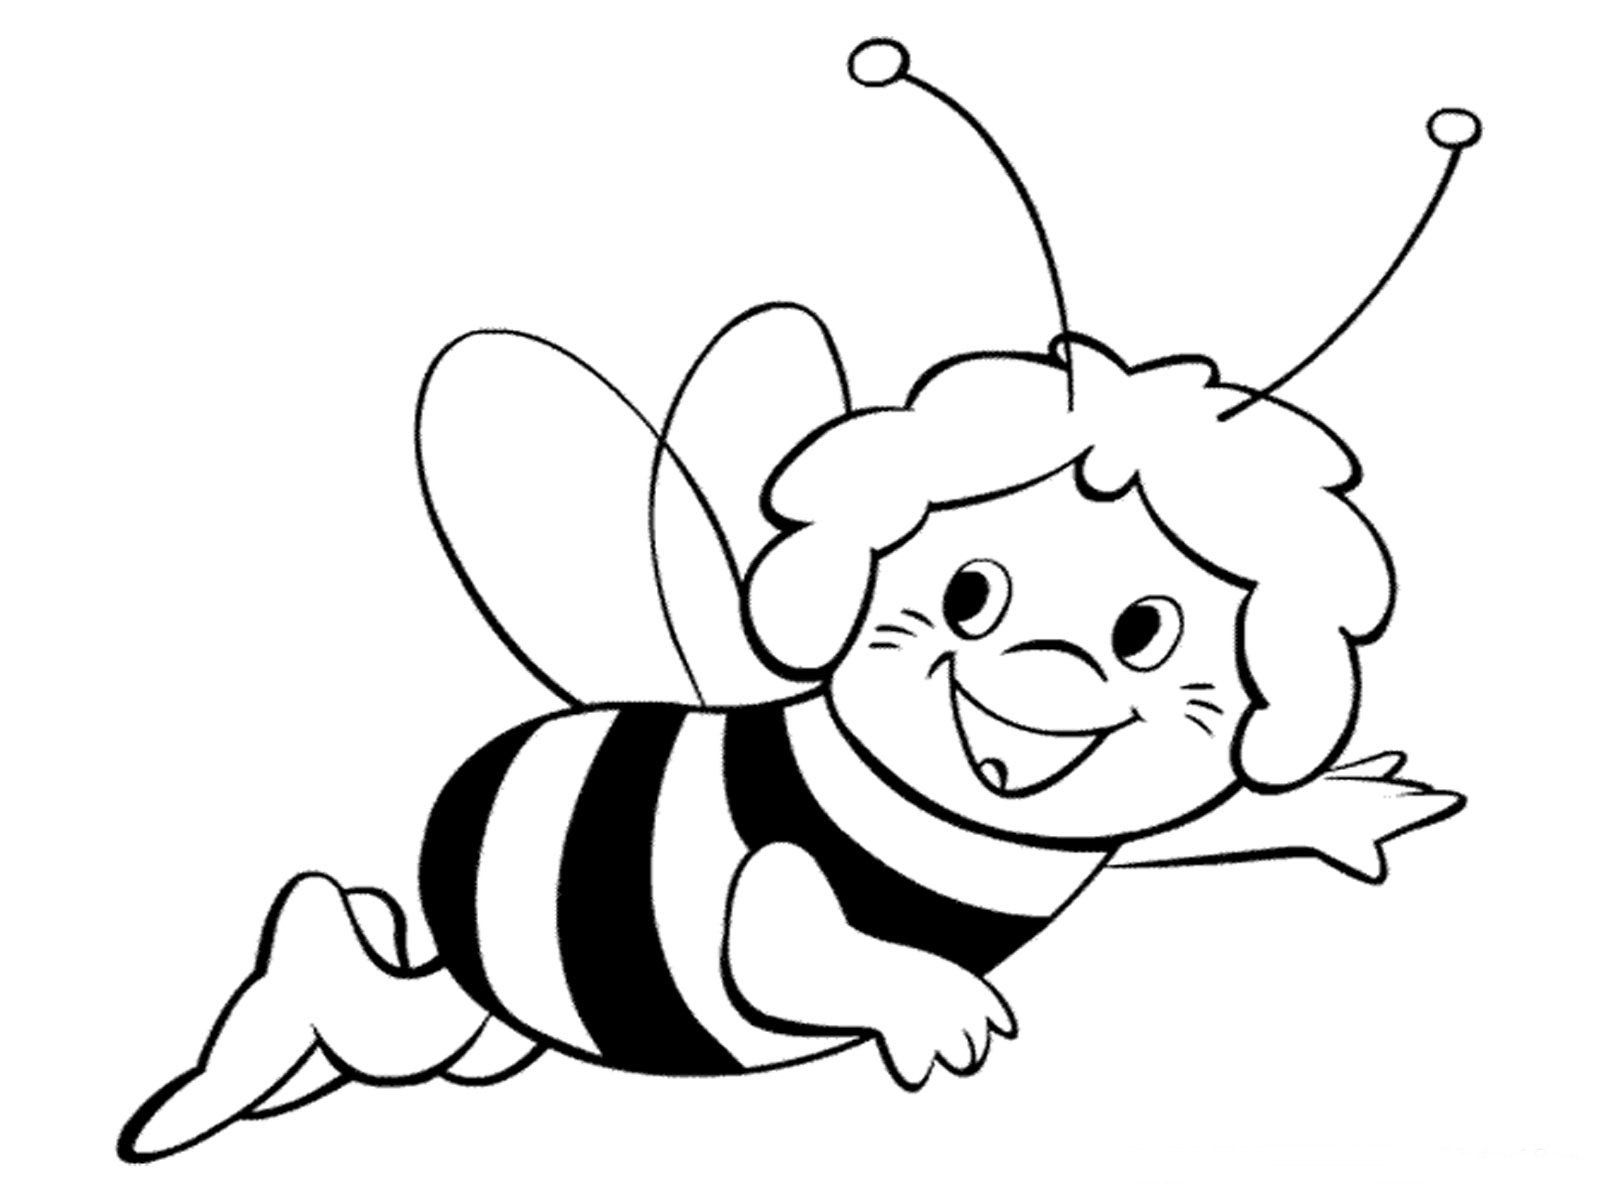 Пчелка раскраска распечатать. Пчела раскраска. Пчела раскраска для детей. Раскраска пчёлка для детей. Пчелка раскраска для малышей.